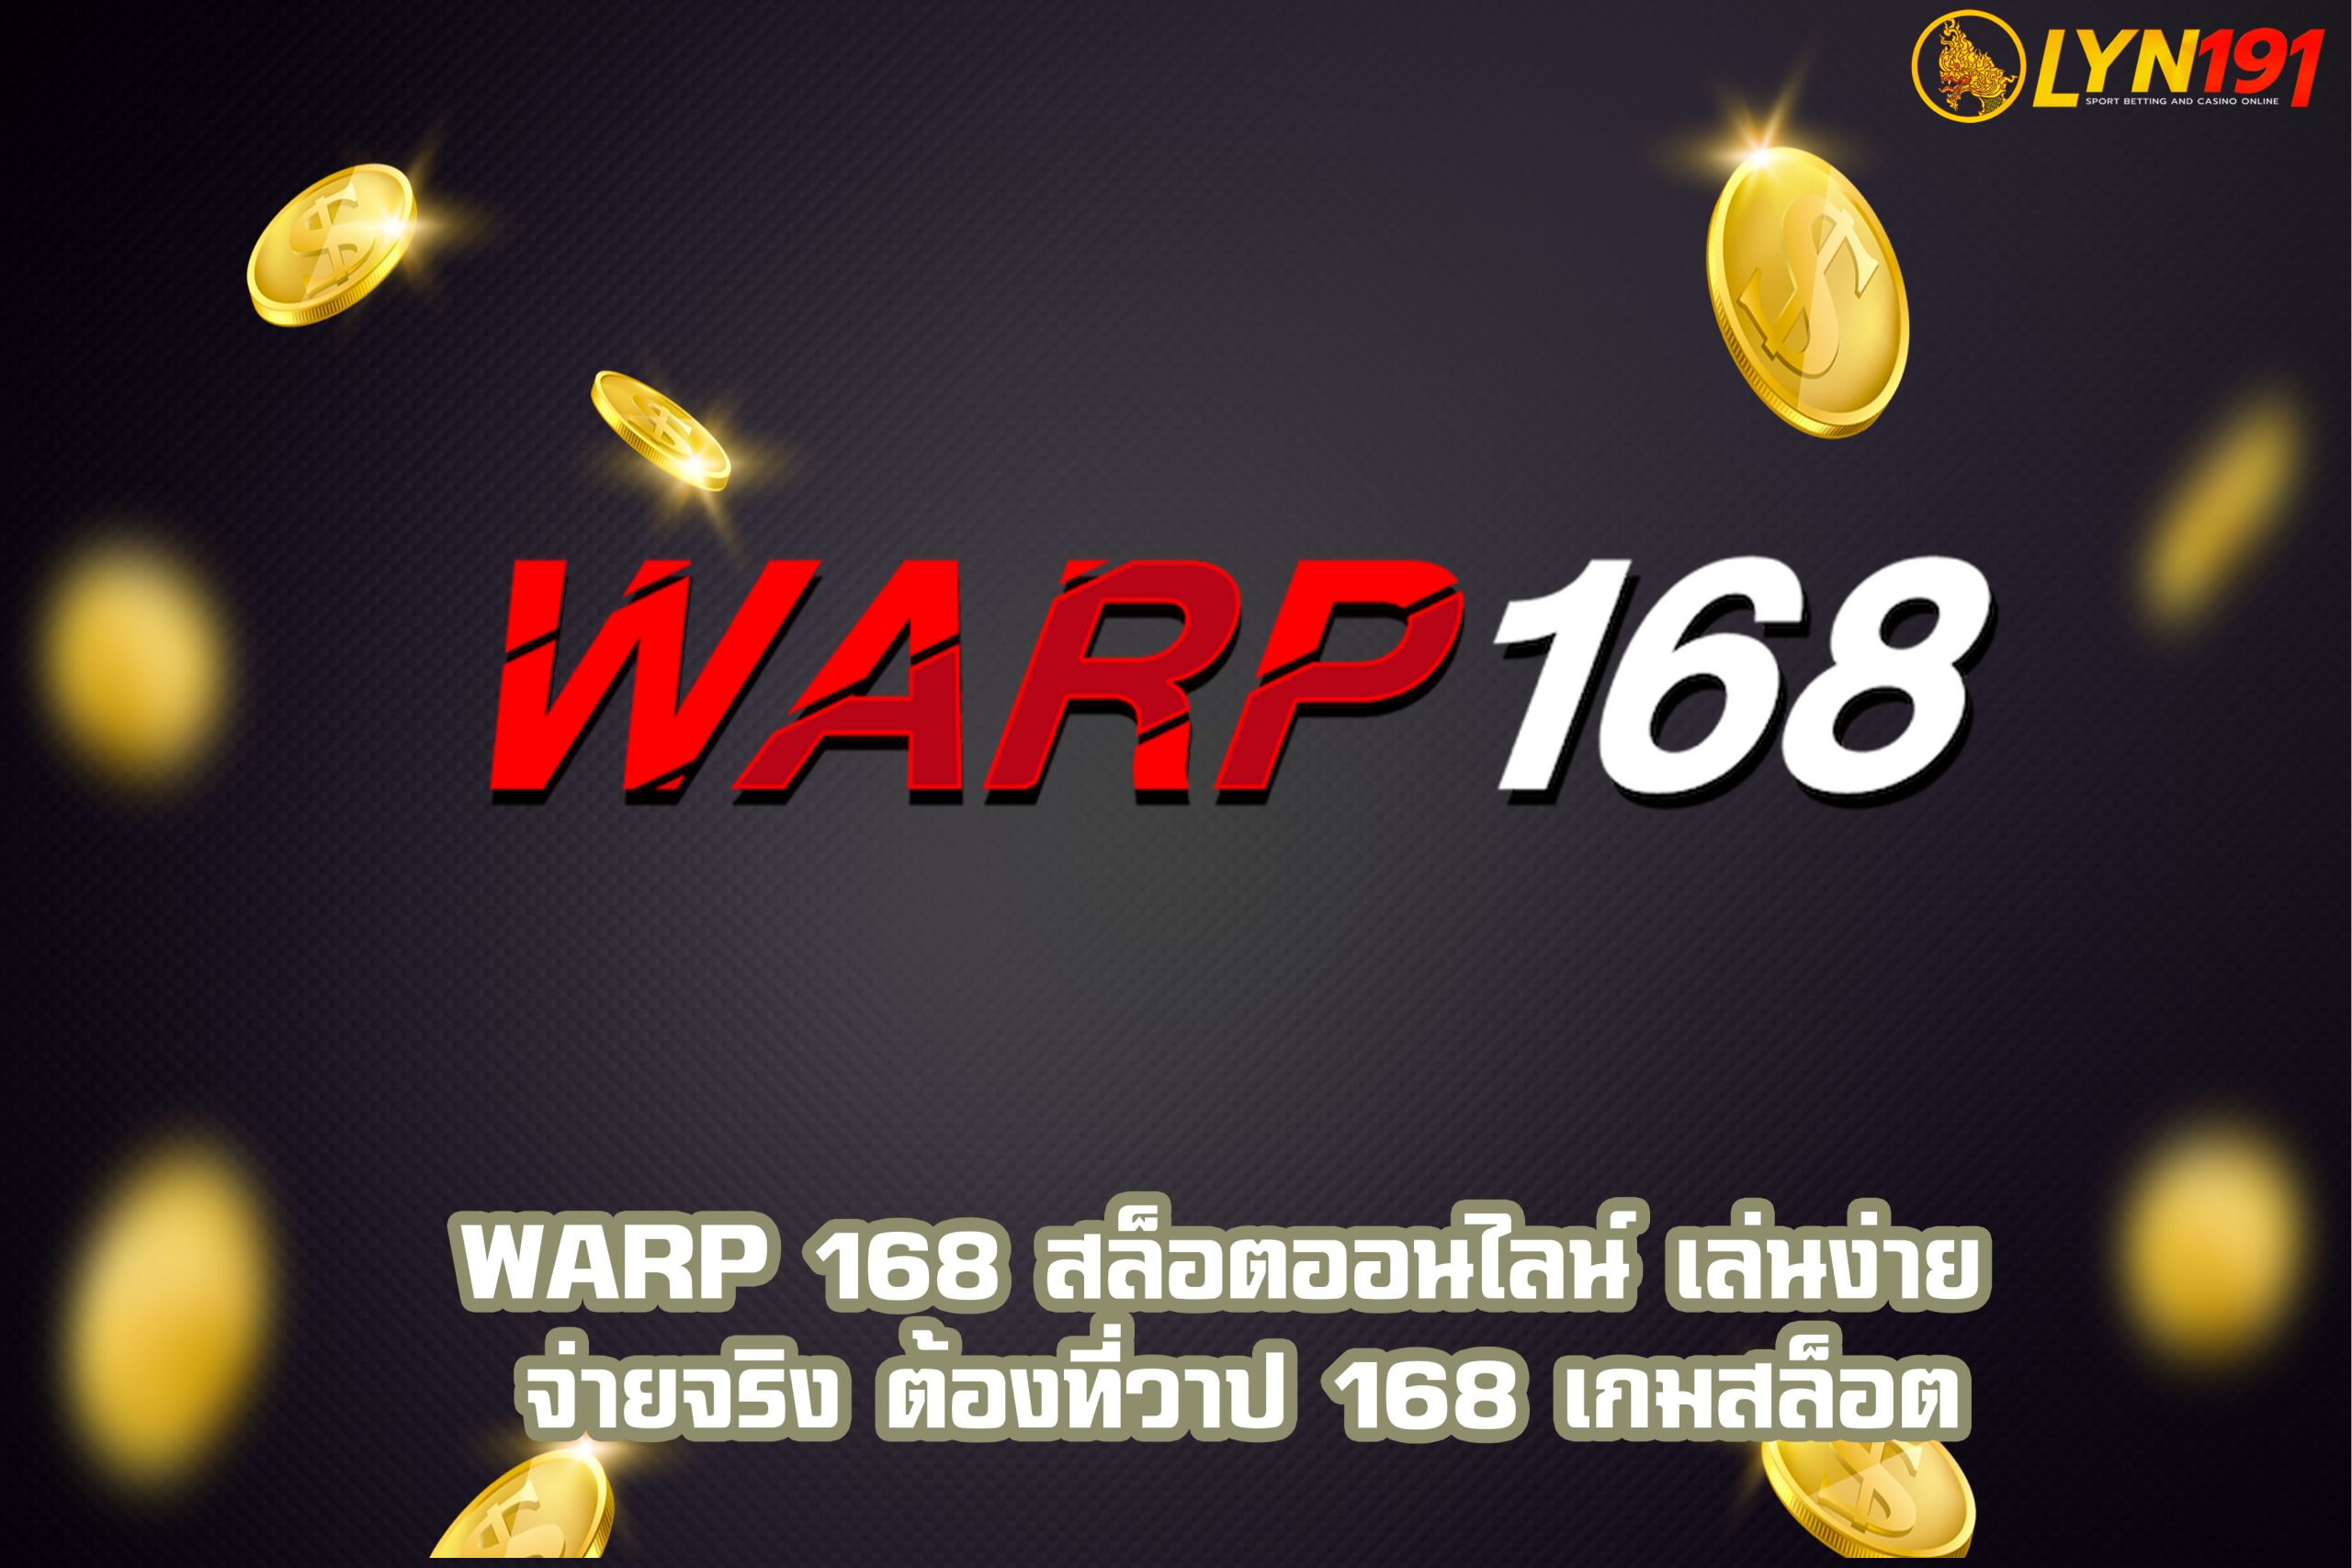 WARP 168